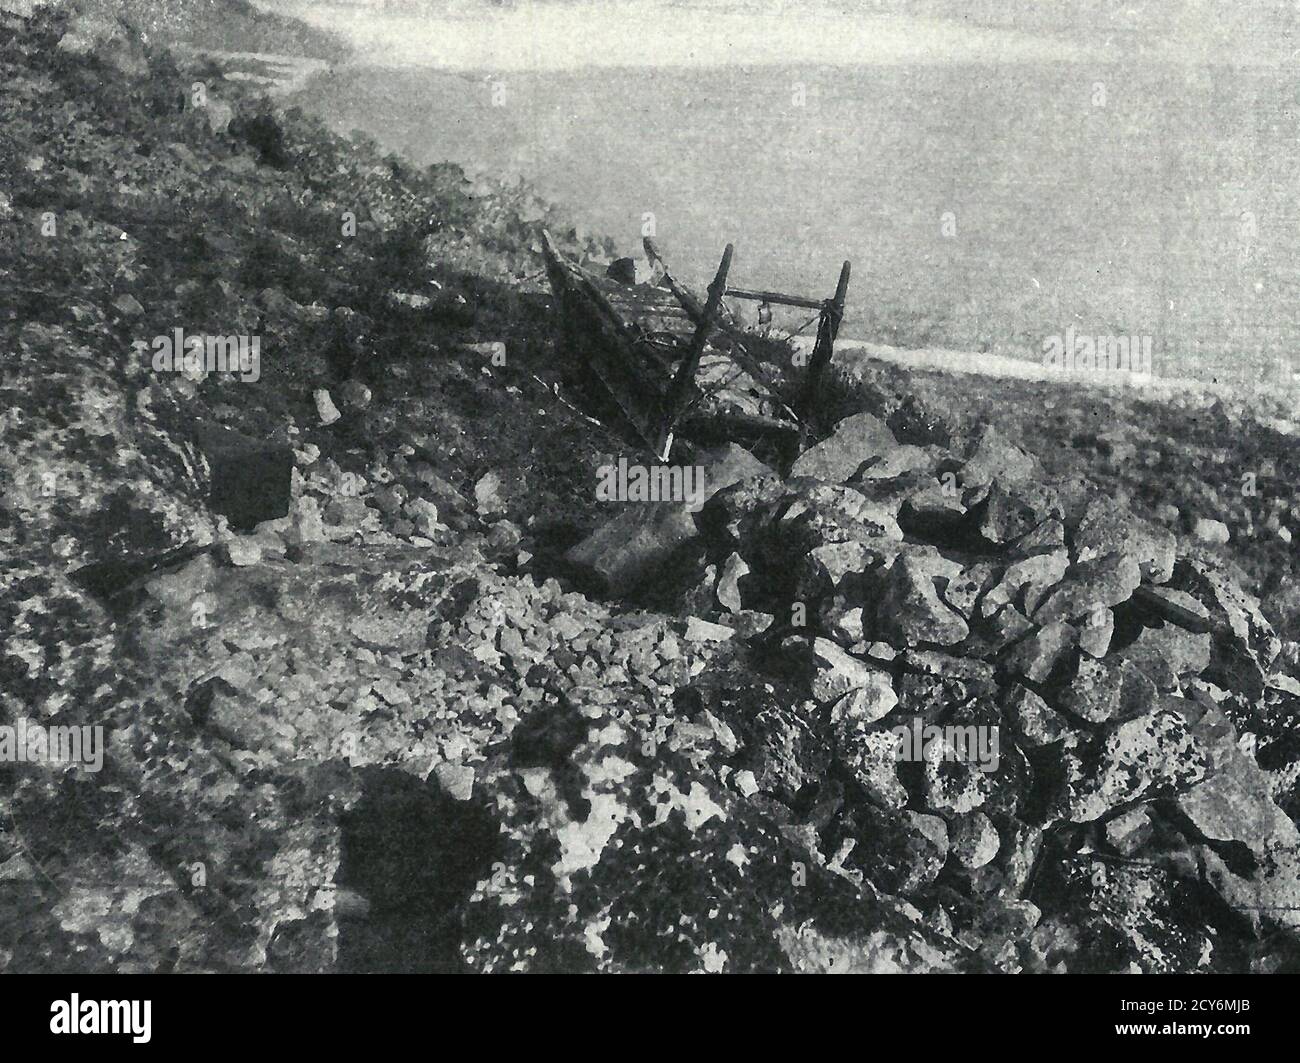 La tomba di un cacciatore di eschimesi - il corpo è coperto da un mucchio di pietre sciolte e la slitta del cacciatore e le armi sono poste accanto ad esso. Circa 1900 Foto Stock